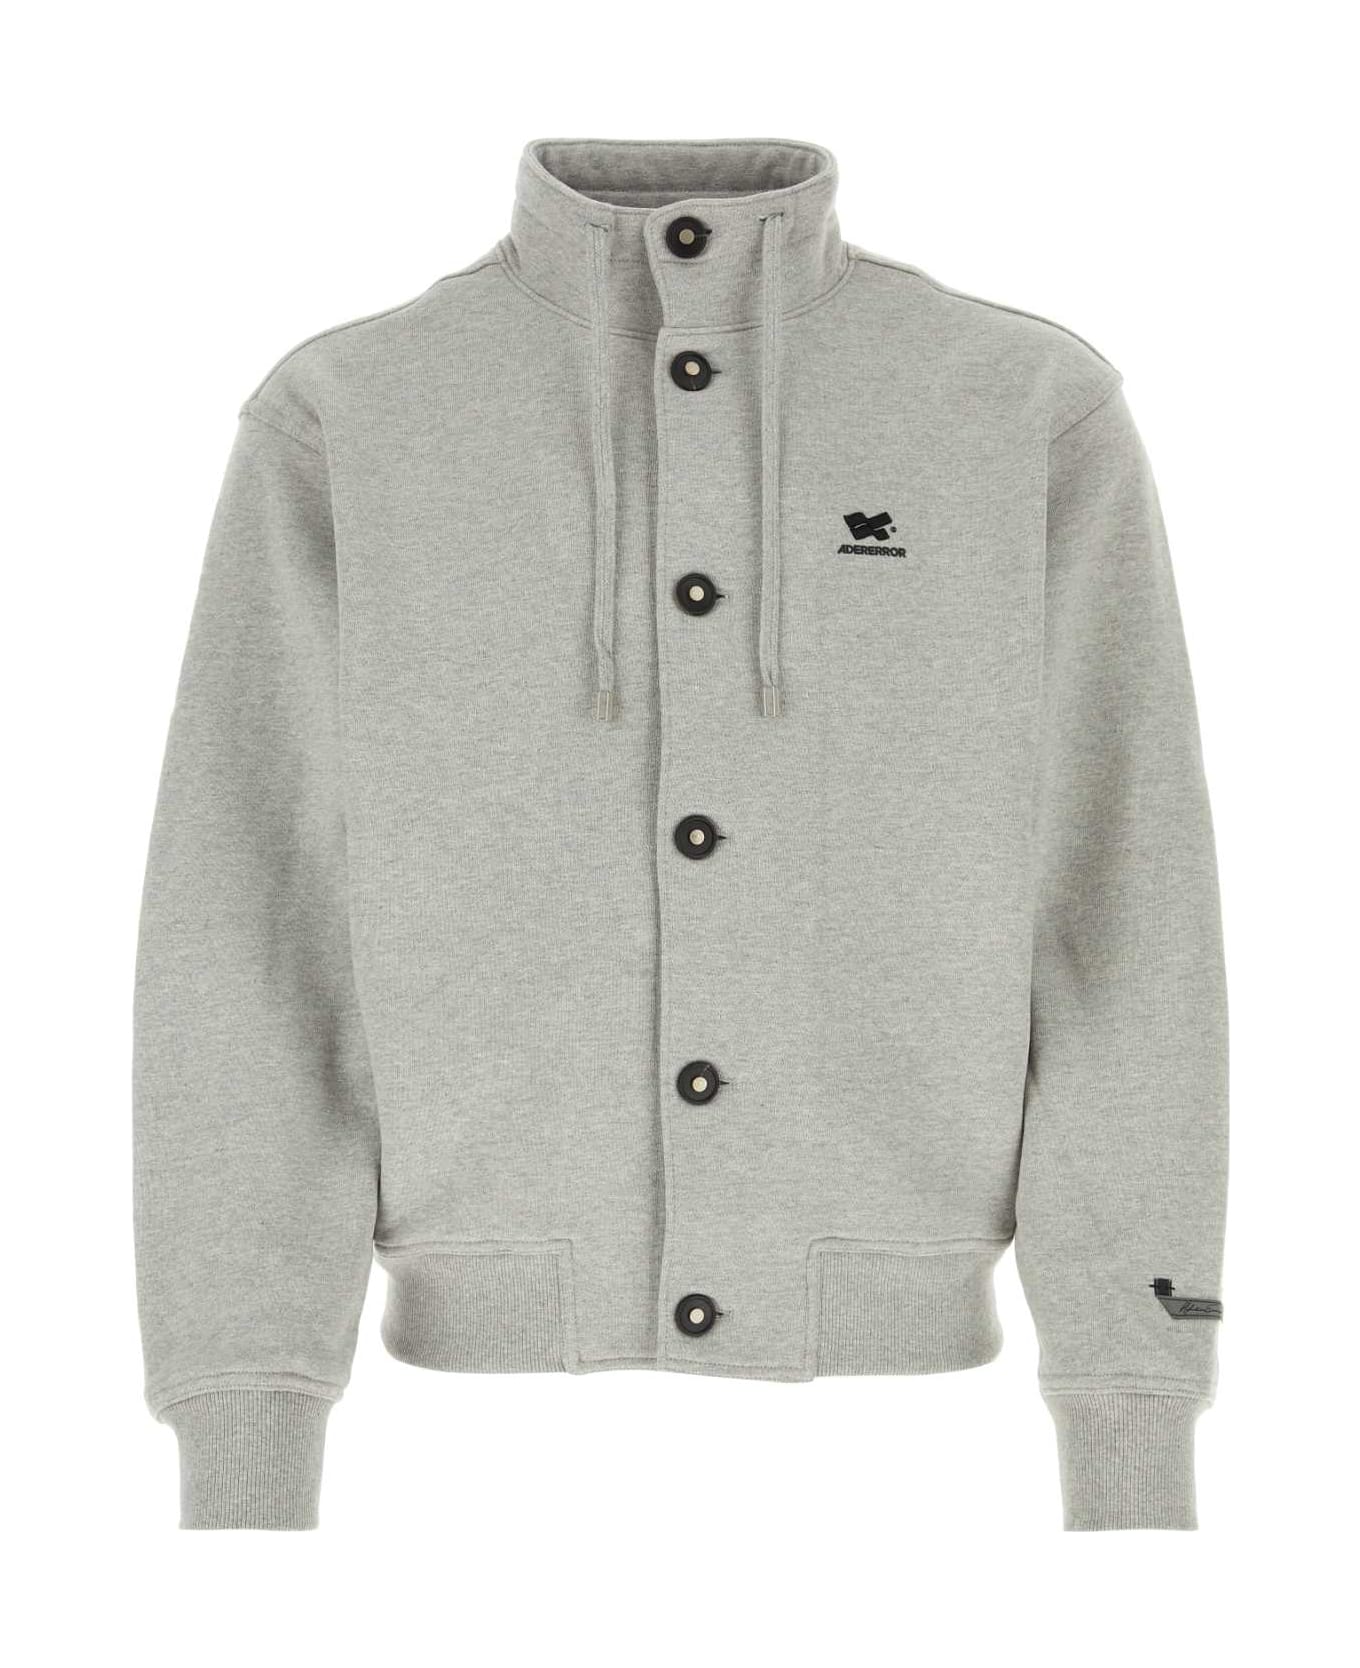 Ader Error Grey Cotton Sweatshirt - GREY